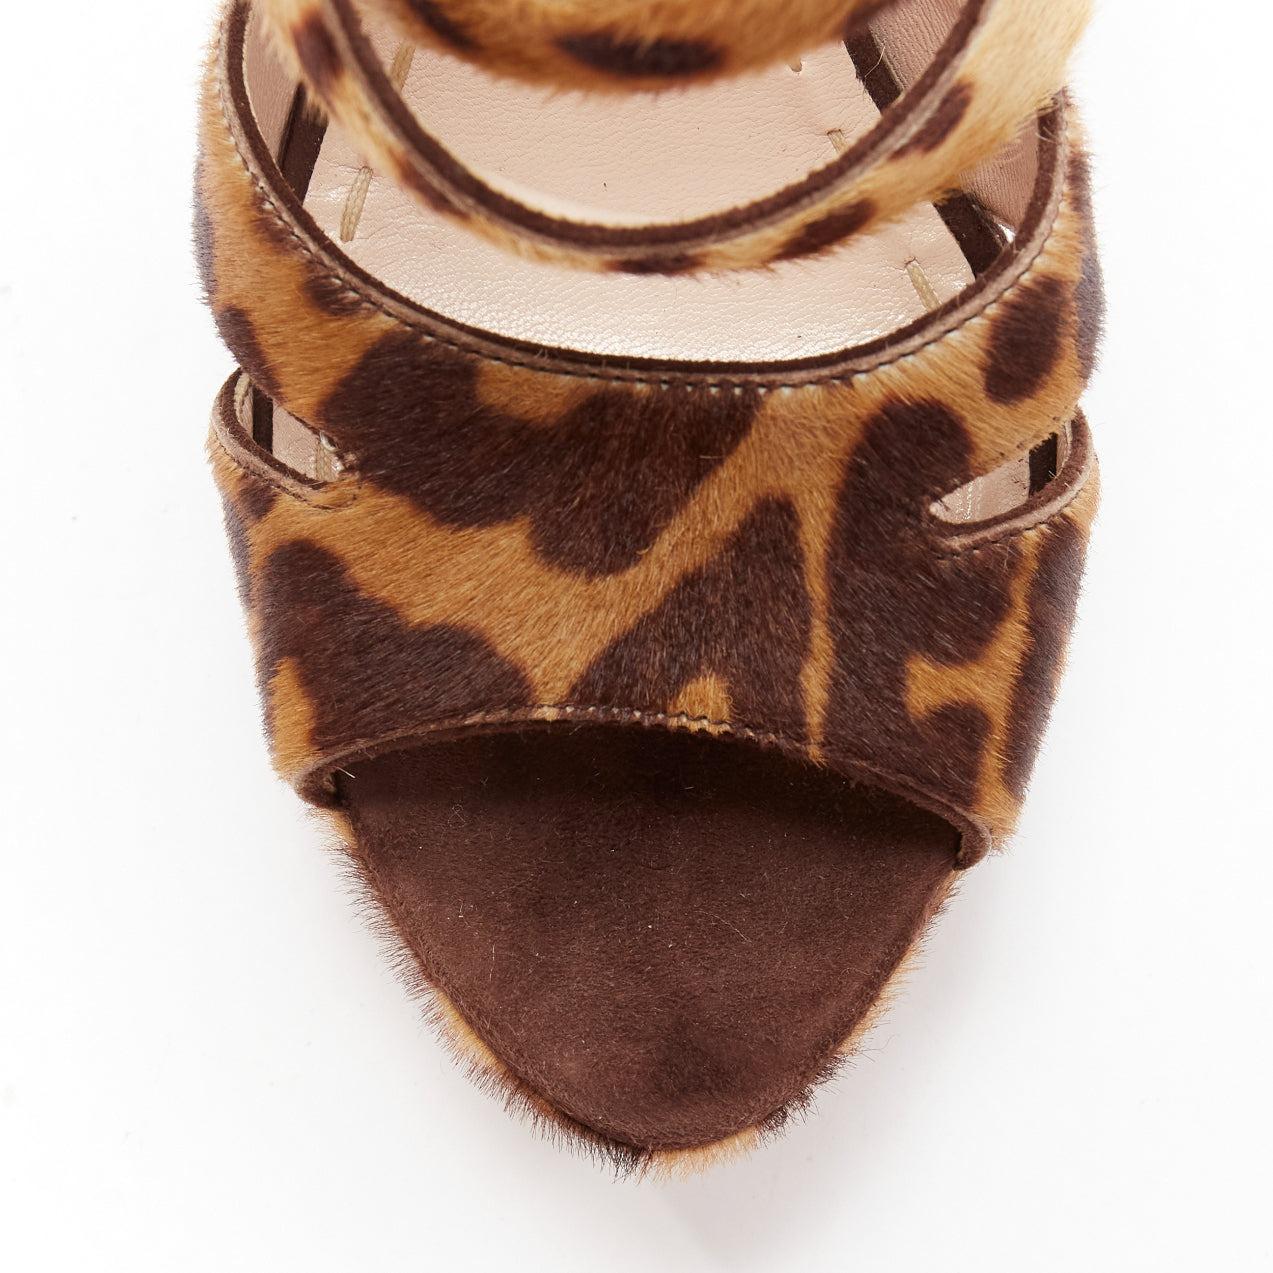 MIU MIU Chaussures à talons compensés en poils de poney imprimés léopard, marron EU37.5 1